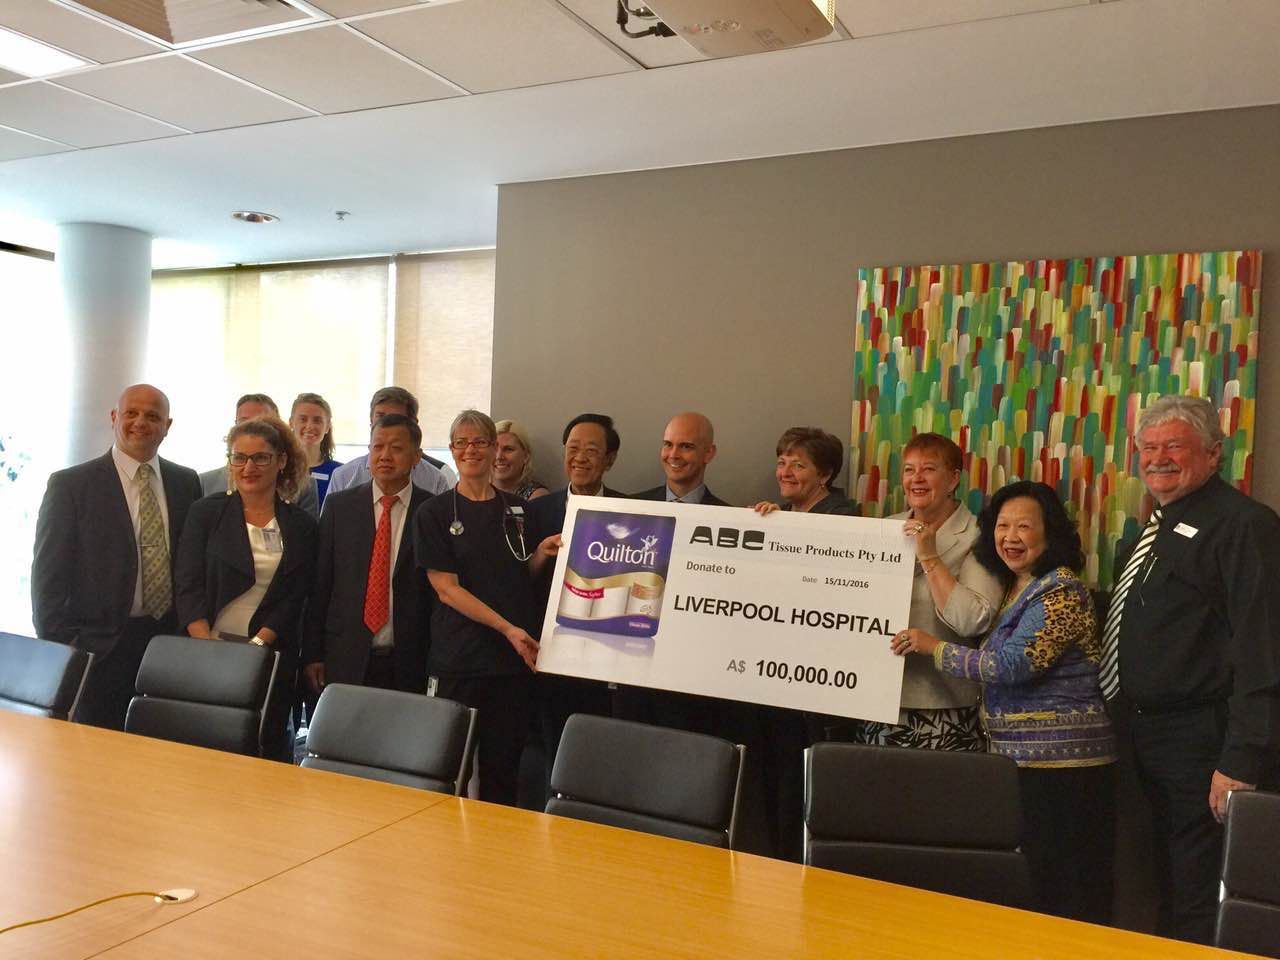 1 3 澳大利亚华裔企业家慈善家魏基成夫妇向悉尼Liverpool医院捐赠10万澳币